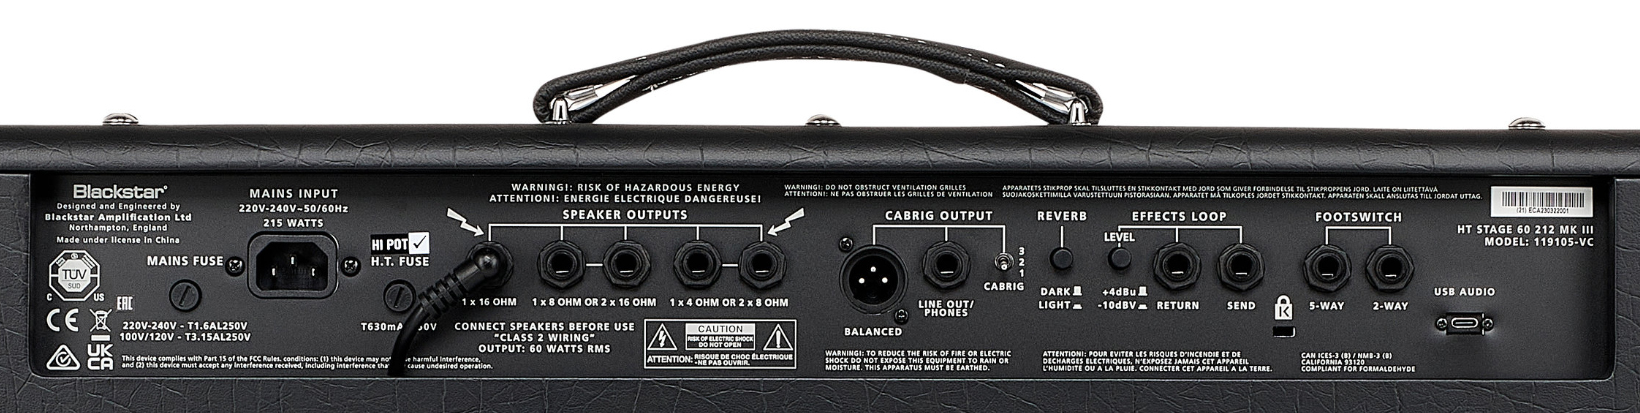 Blackstar Ht Venue Stage 60 212 Mkiii 60w 2x12 El34 - Combo amplificador para guitarra eléctrica - Variation 4